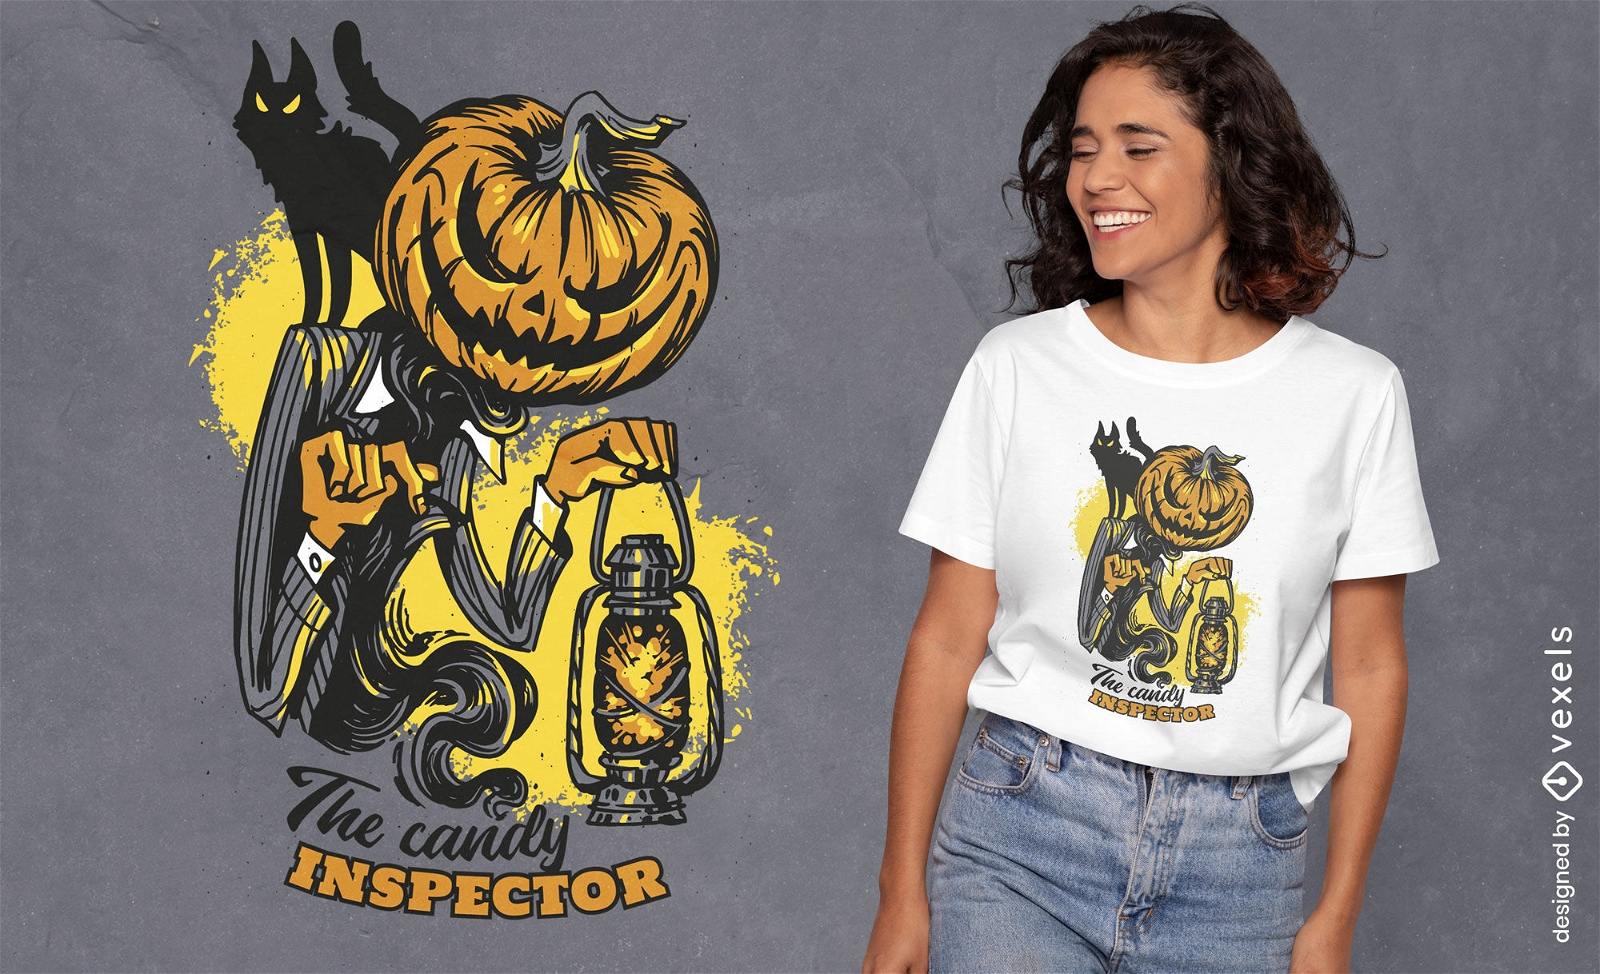 Candy inspector creepy Halloween pumpkin t-shirt design